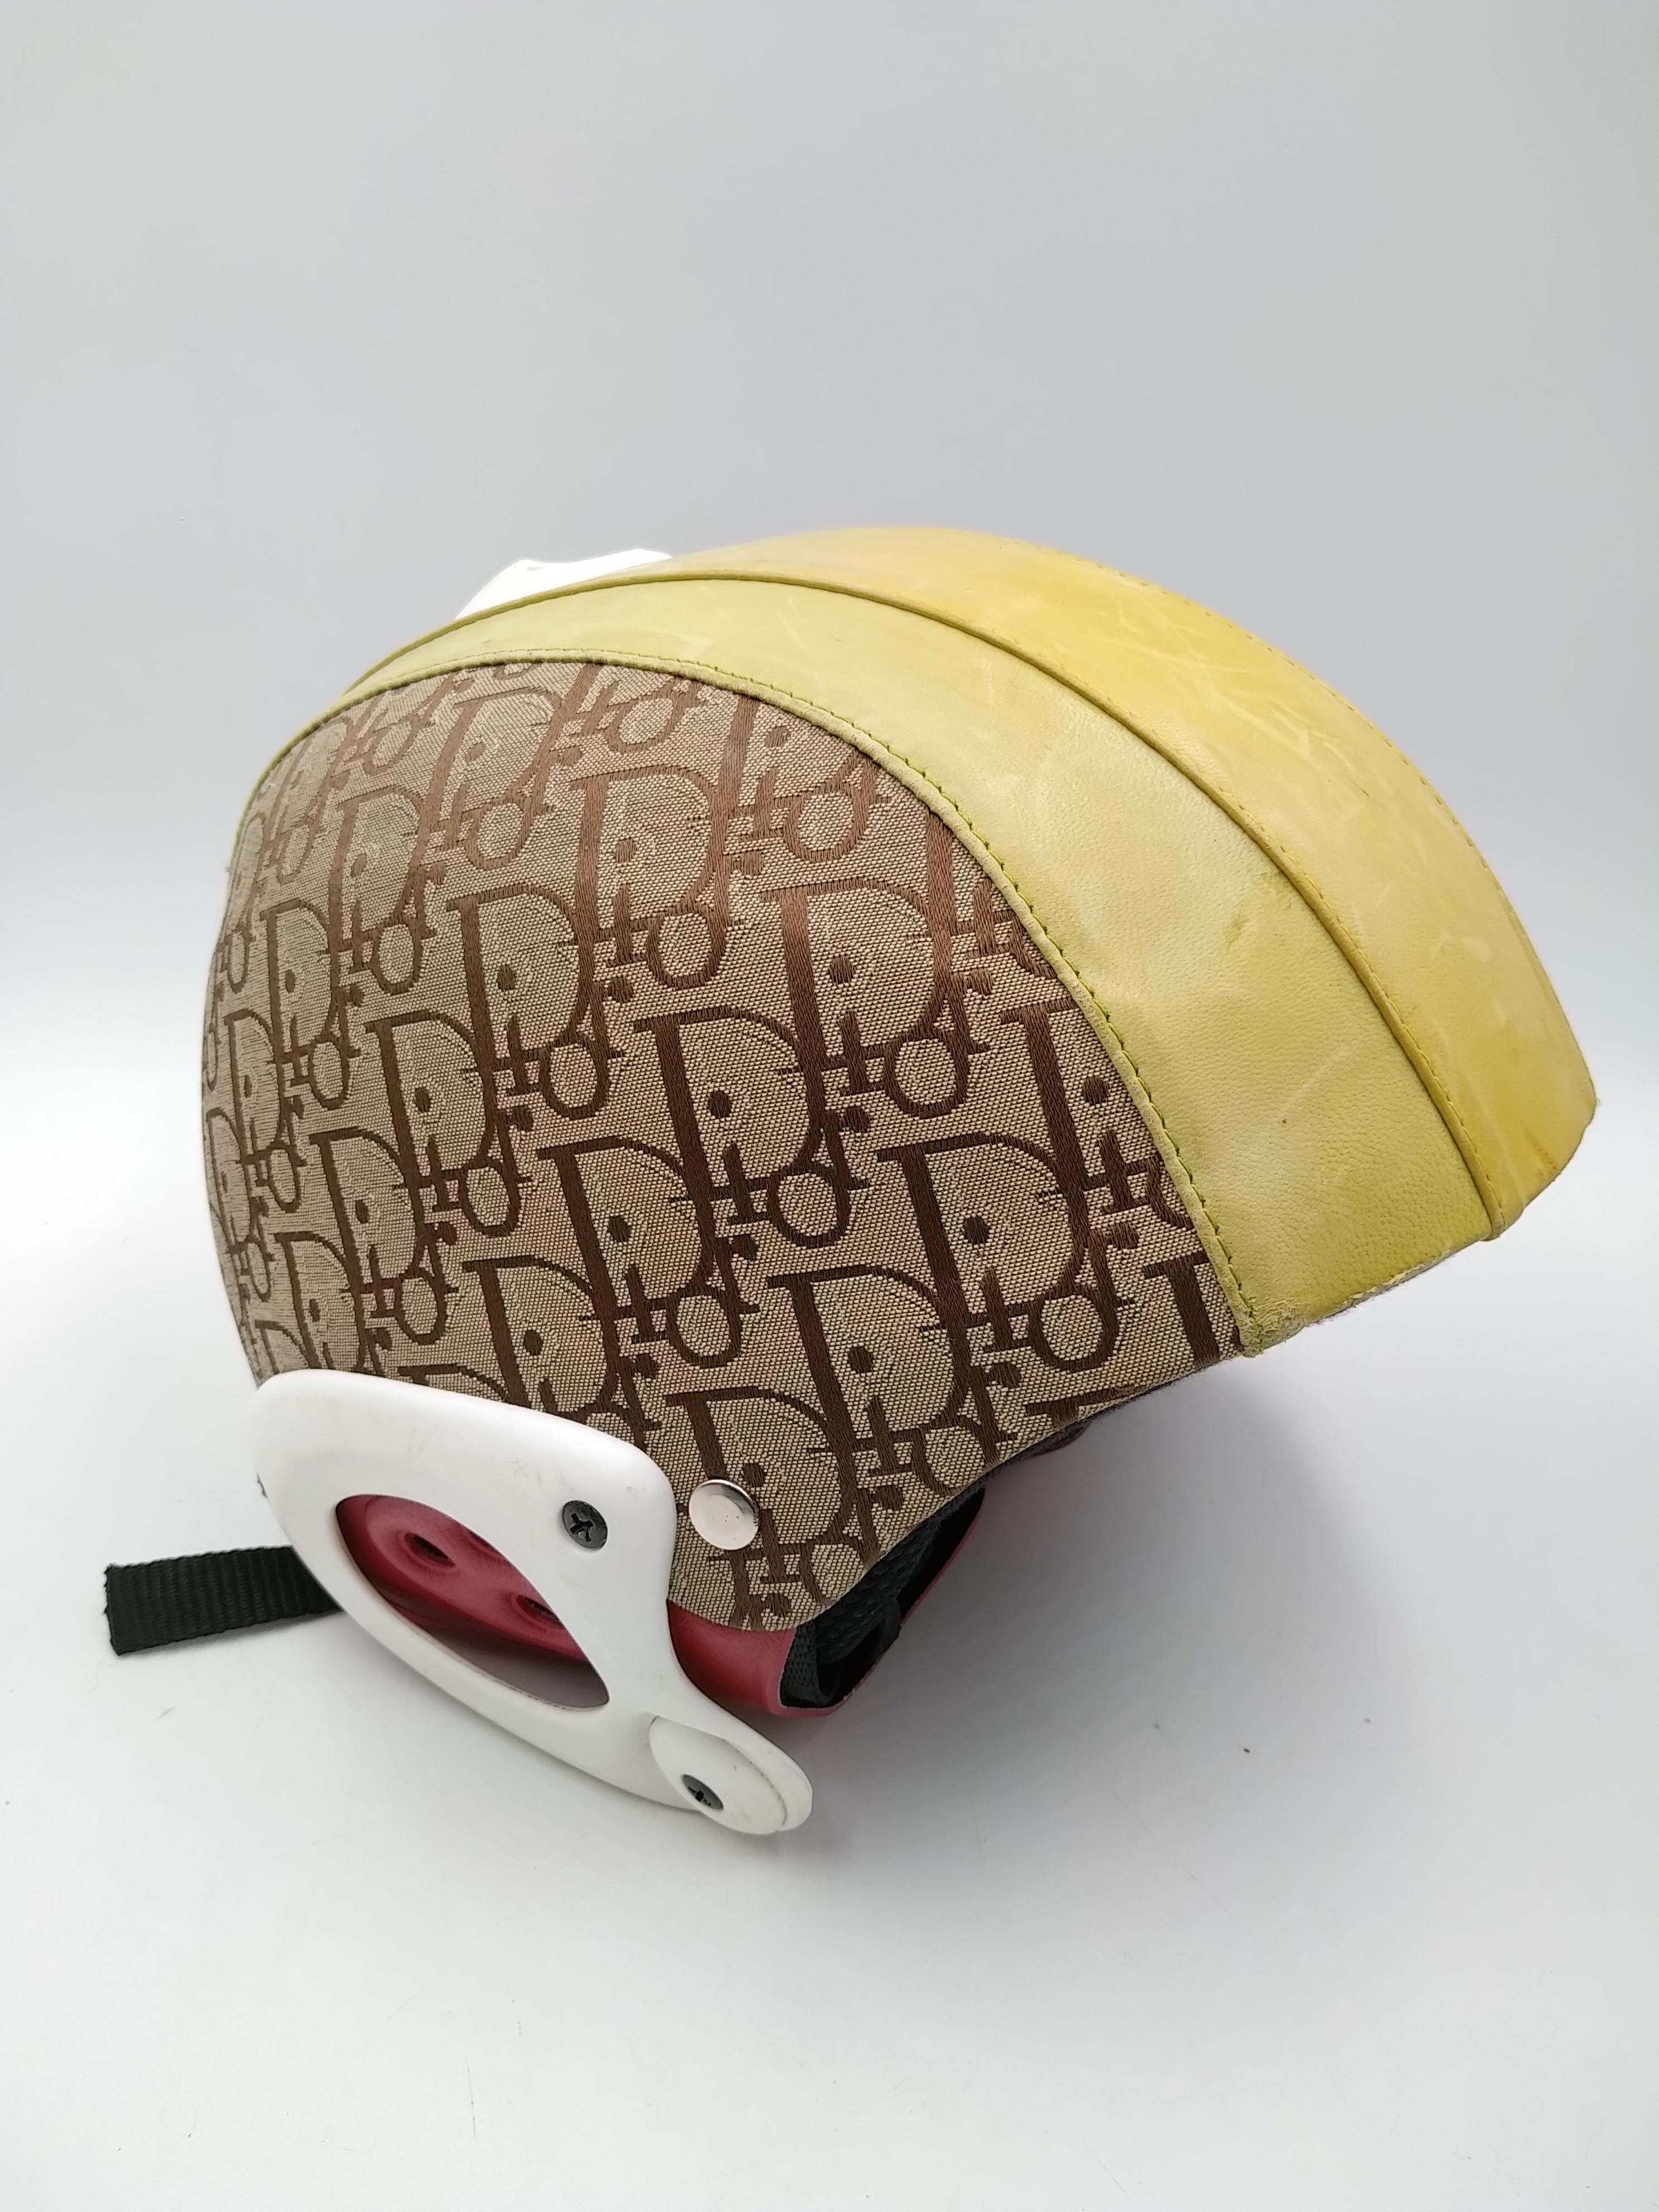 Christian Dior Limited Edition Multicolor Rasta Trotter Alpine Sport Helmet, von John Galliano für die Kollektion 2004.
-100% authentisch Christian Dior
- Kinnriemen Segeltuch & Leder
- Für Alpine Sport 
- größe L, 58/60
